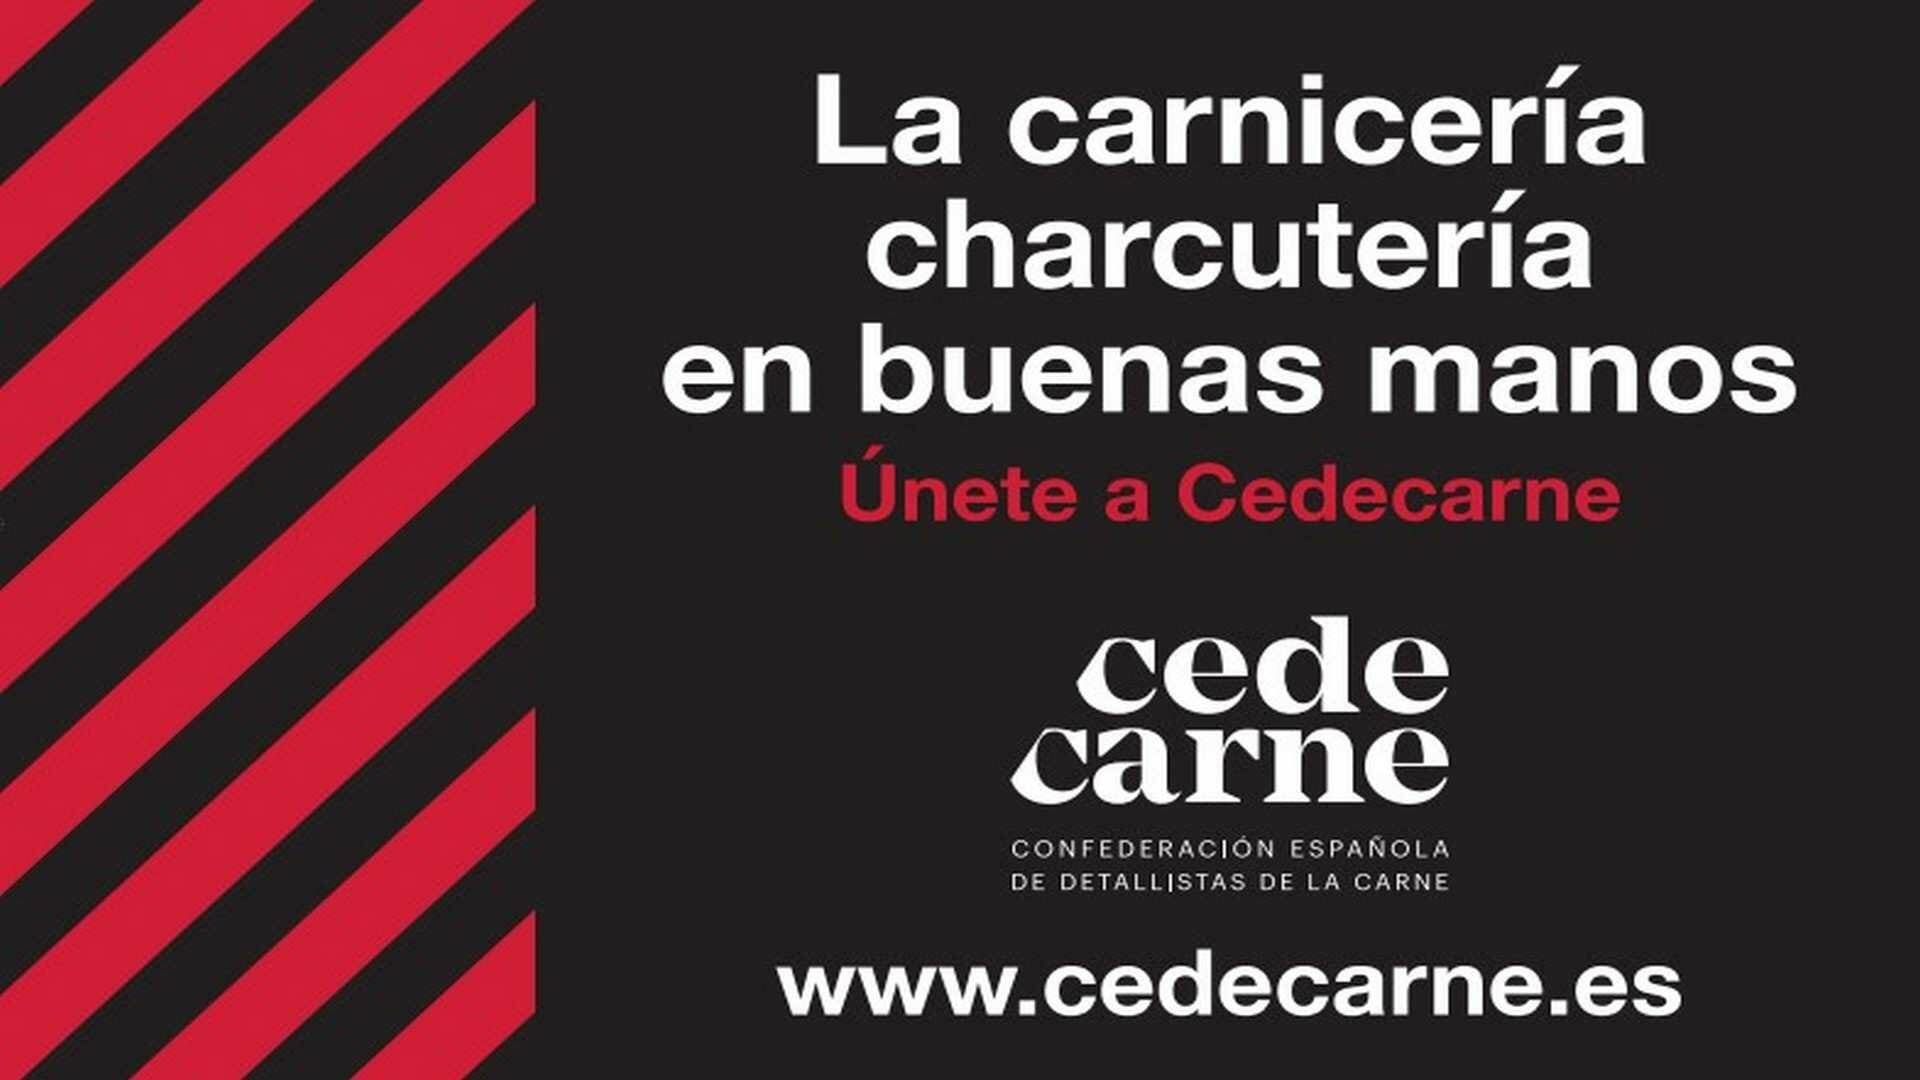 Cedecarne es la confederación española de detallistas de la carne